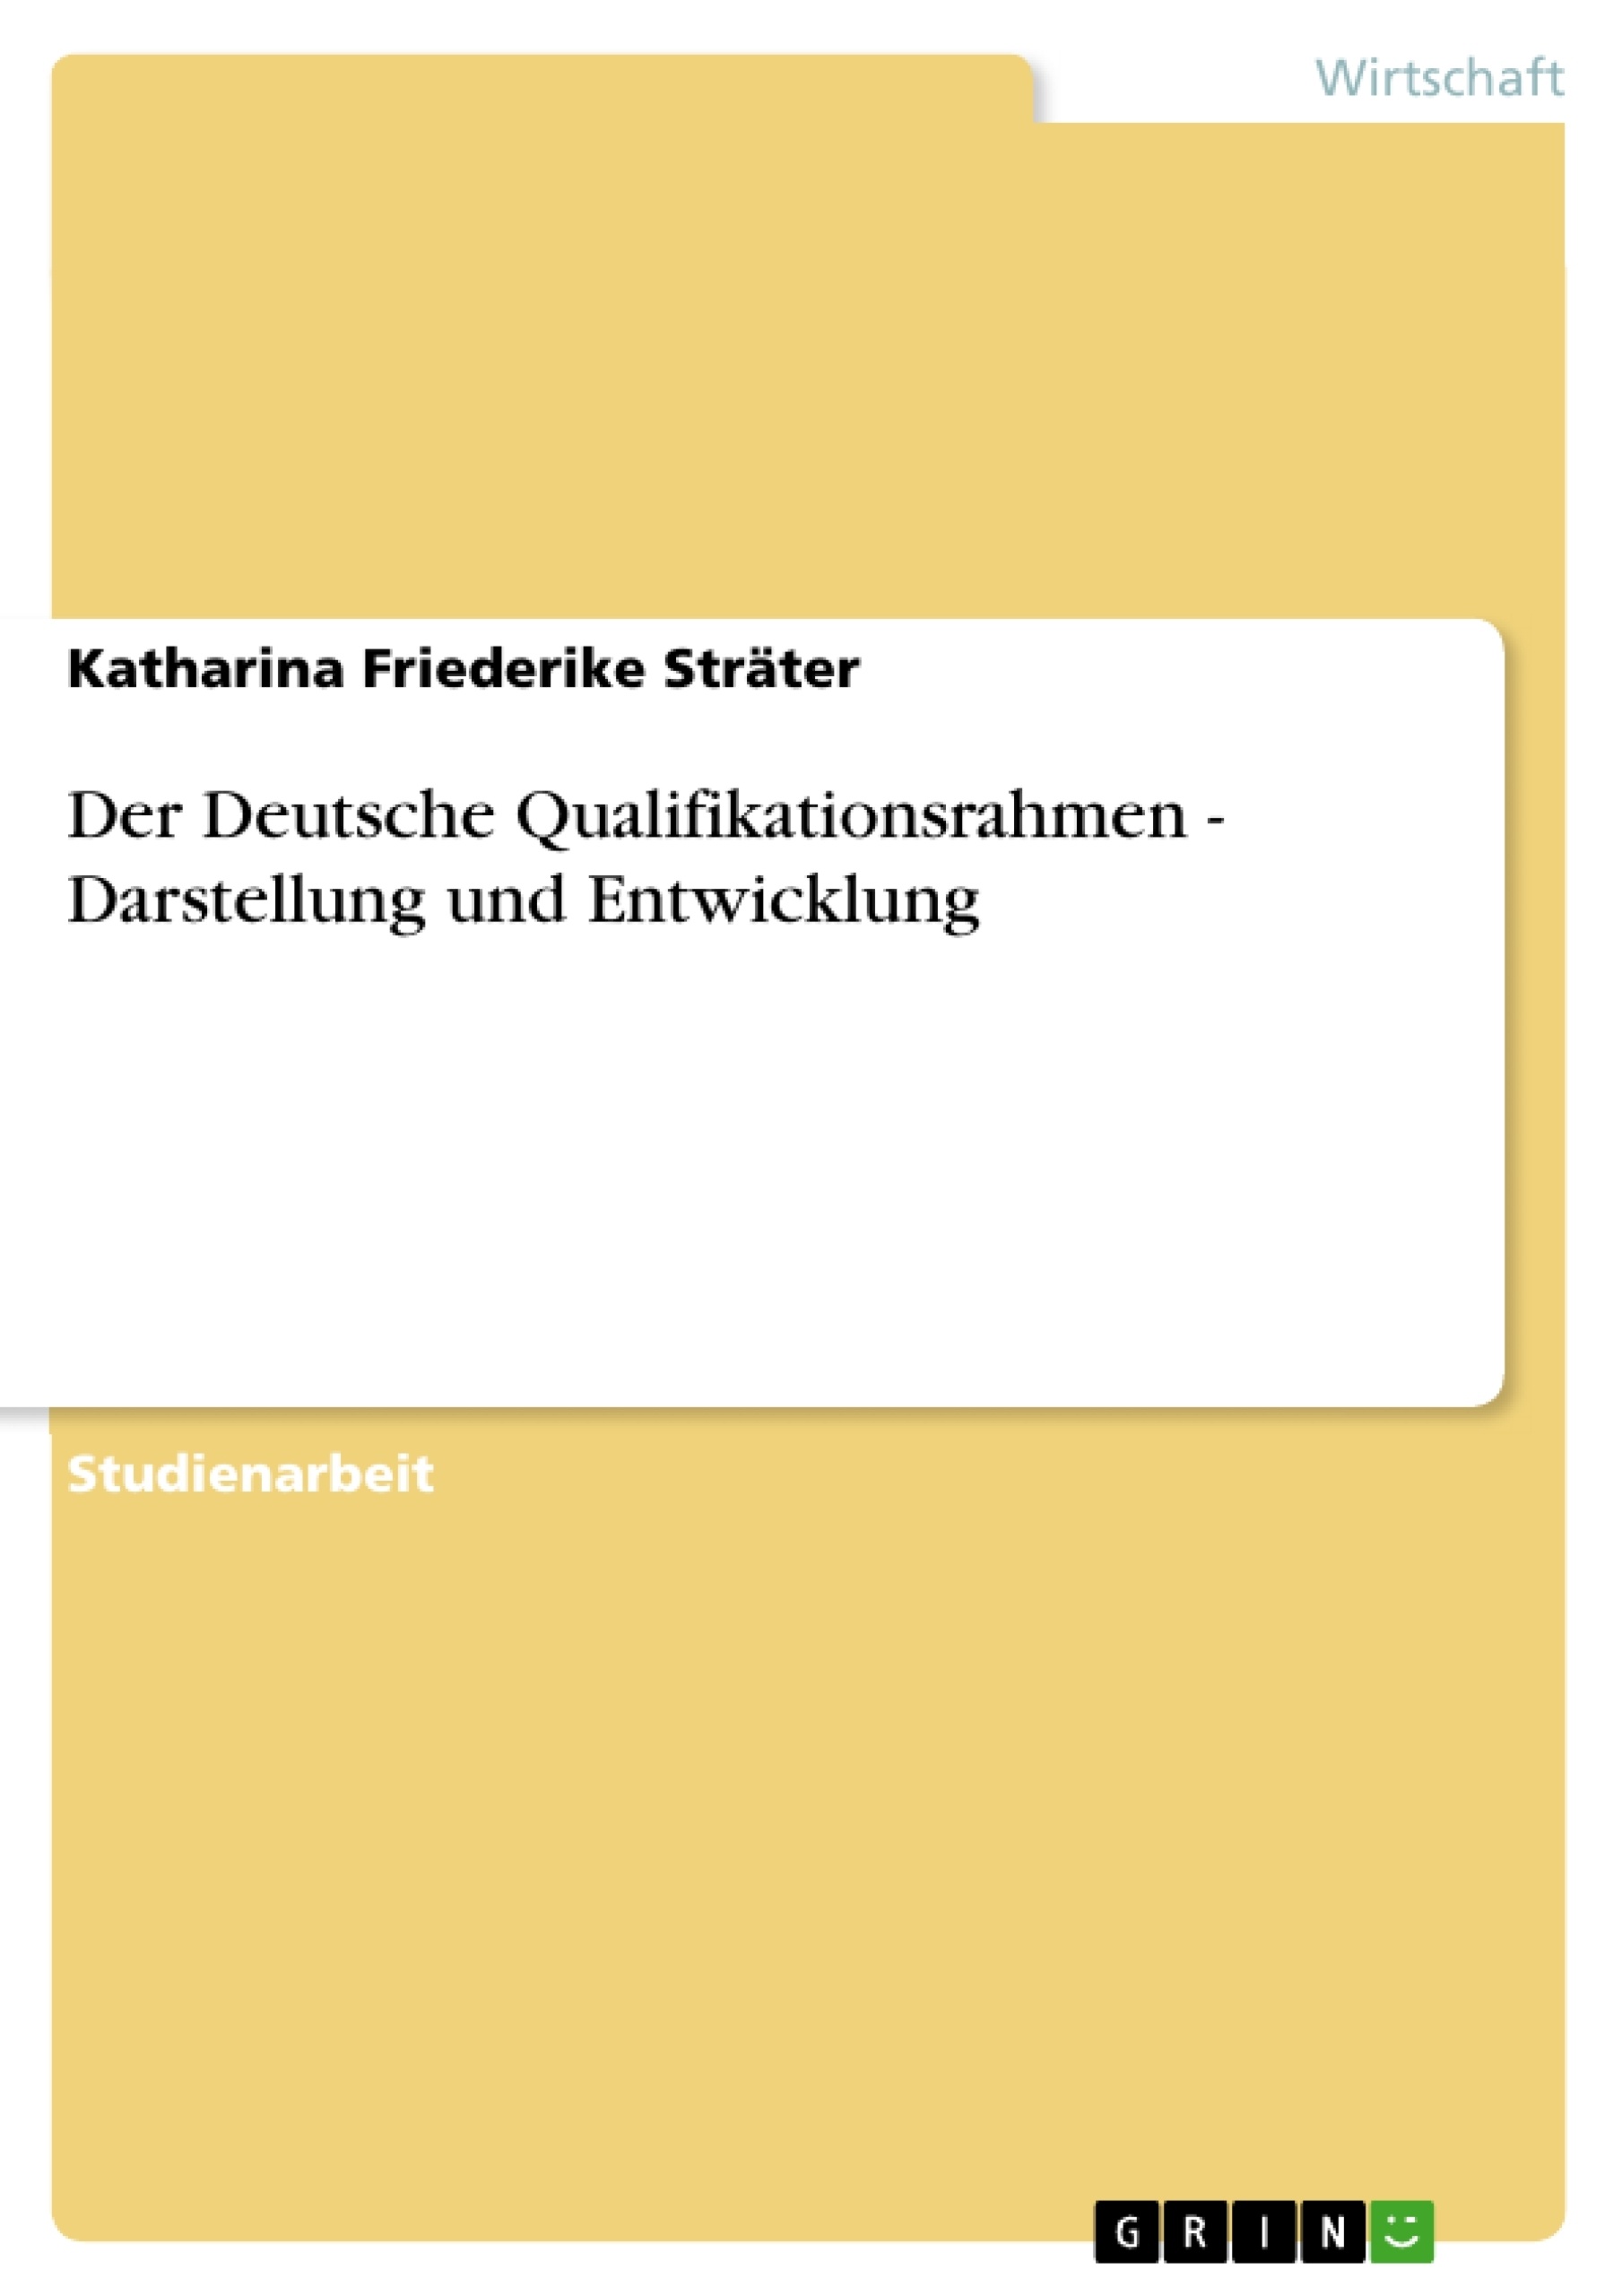 Title: Der Deutsche Qualifikationsrahmen - Darstellung und Entwicklung